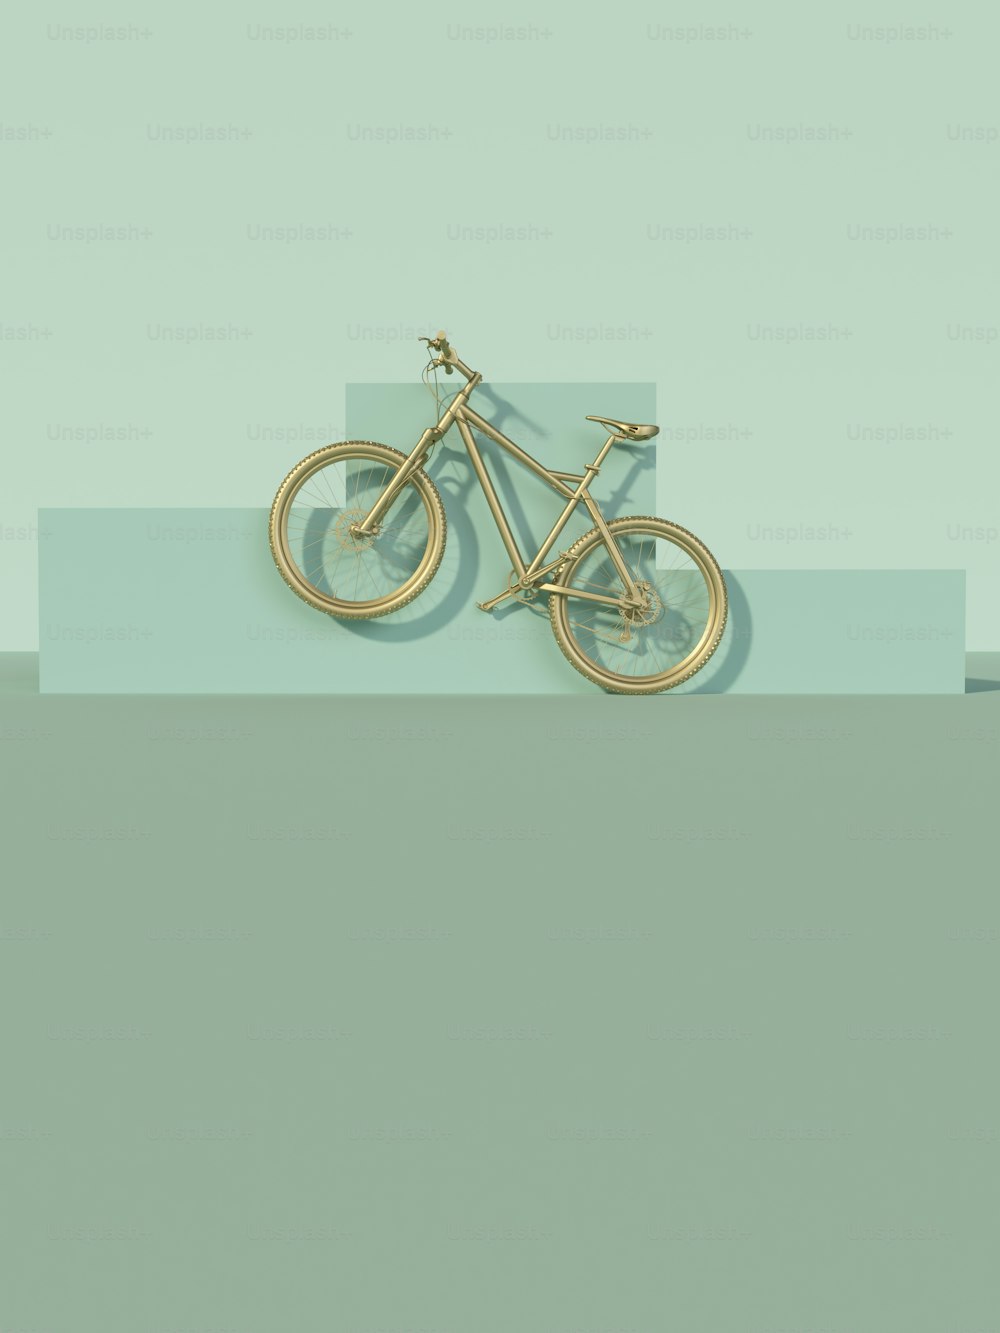 Una bici dorata è mostrata su uno sfondo blu e verde